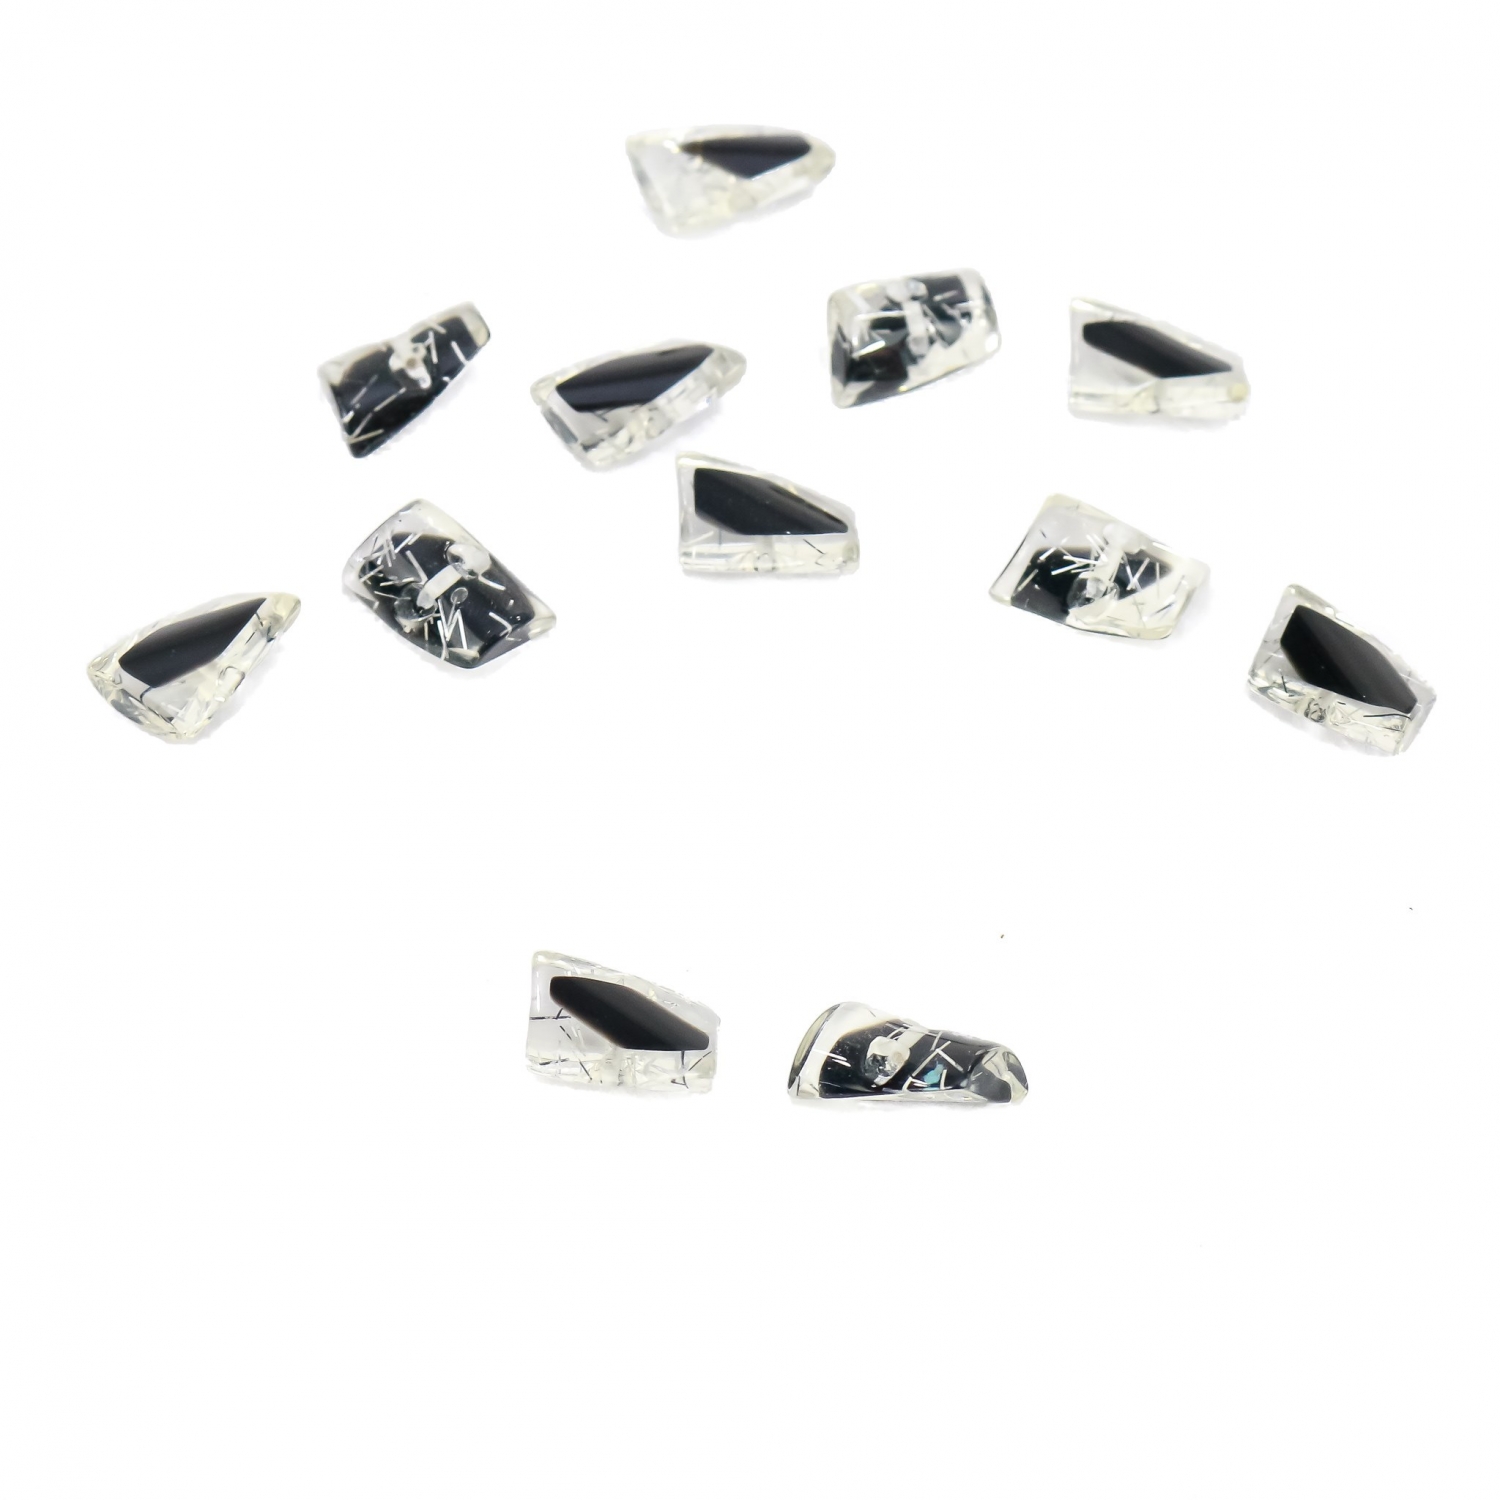 Plastic Shank Buttons, Size: 28L (100 pcs/pack)Code: 0315-6518